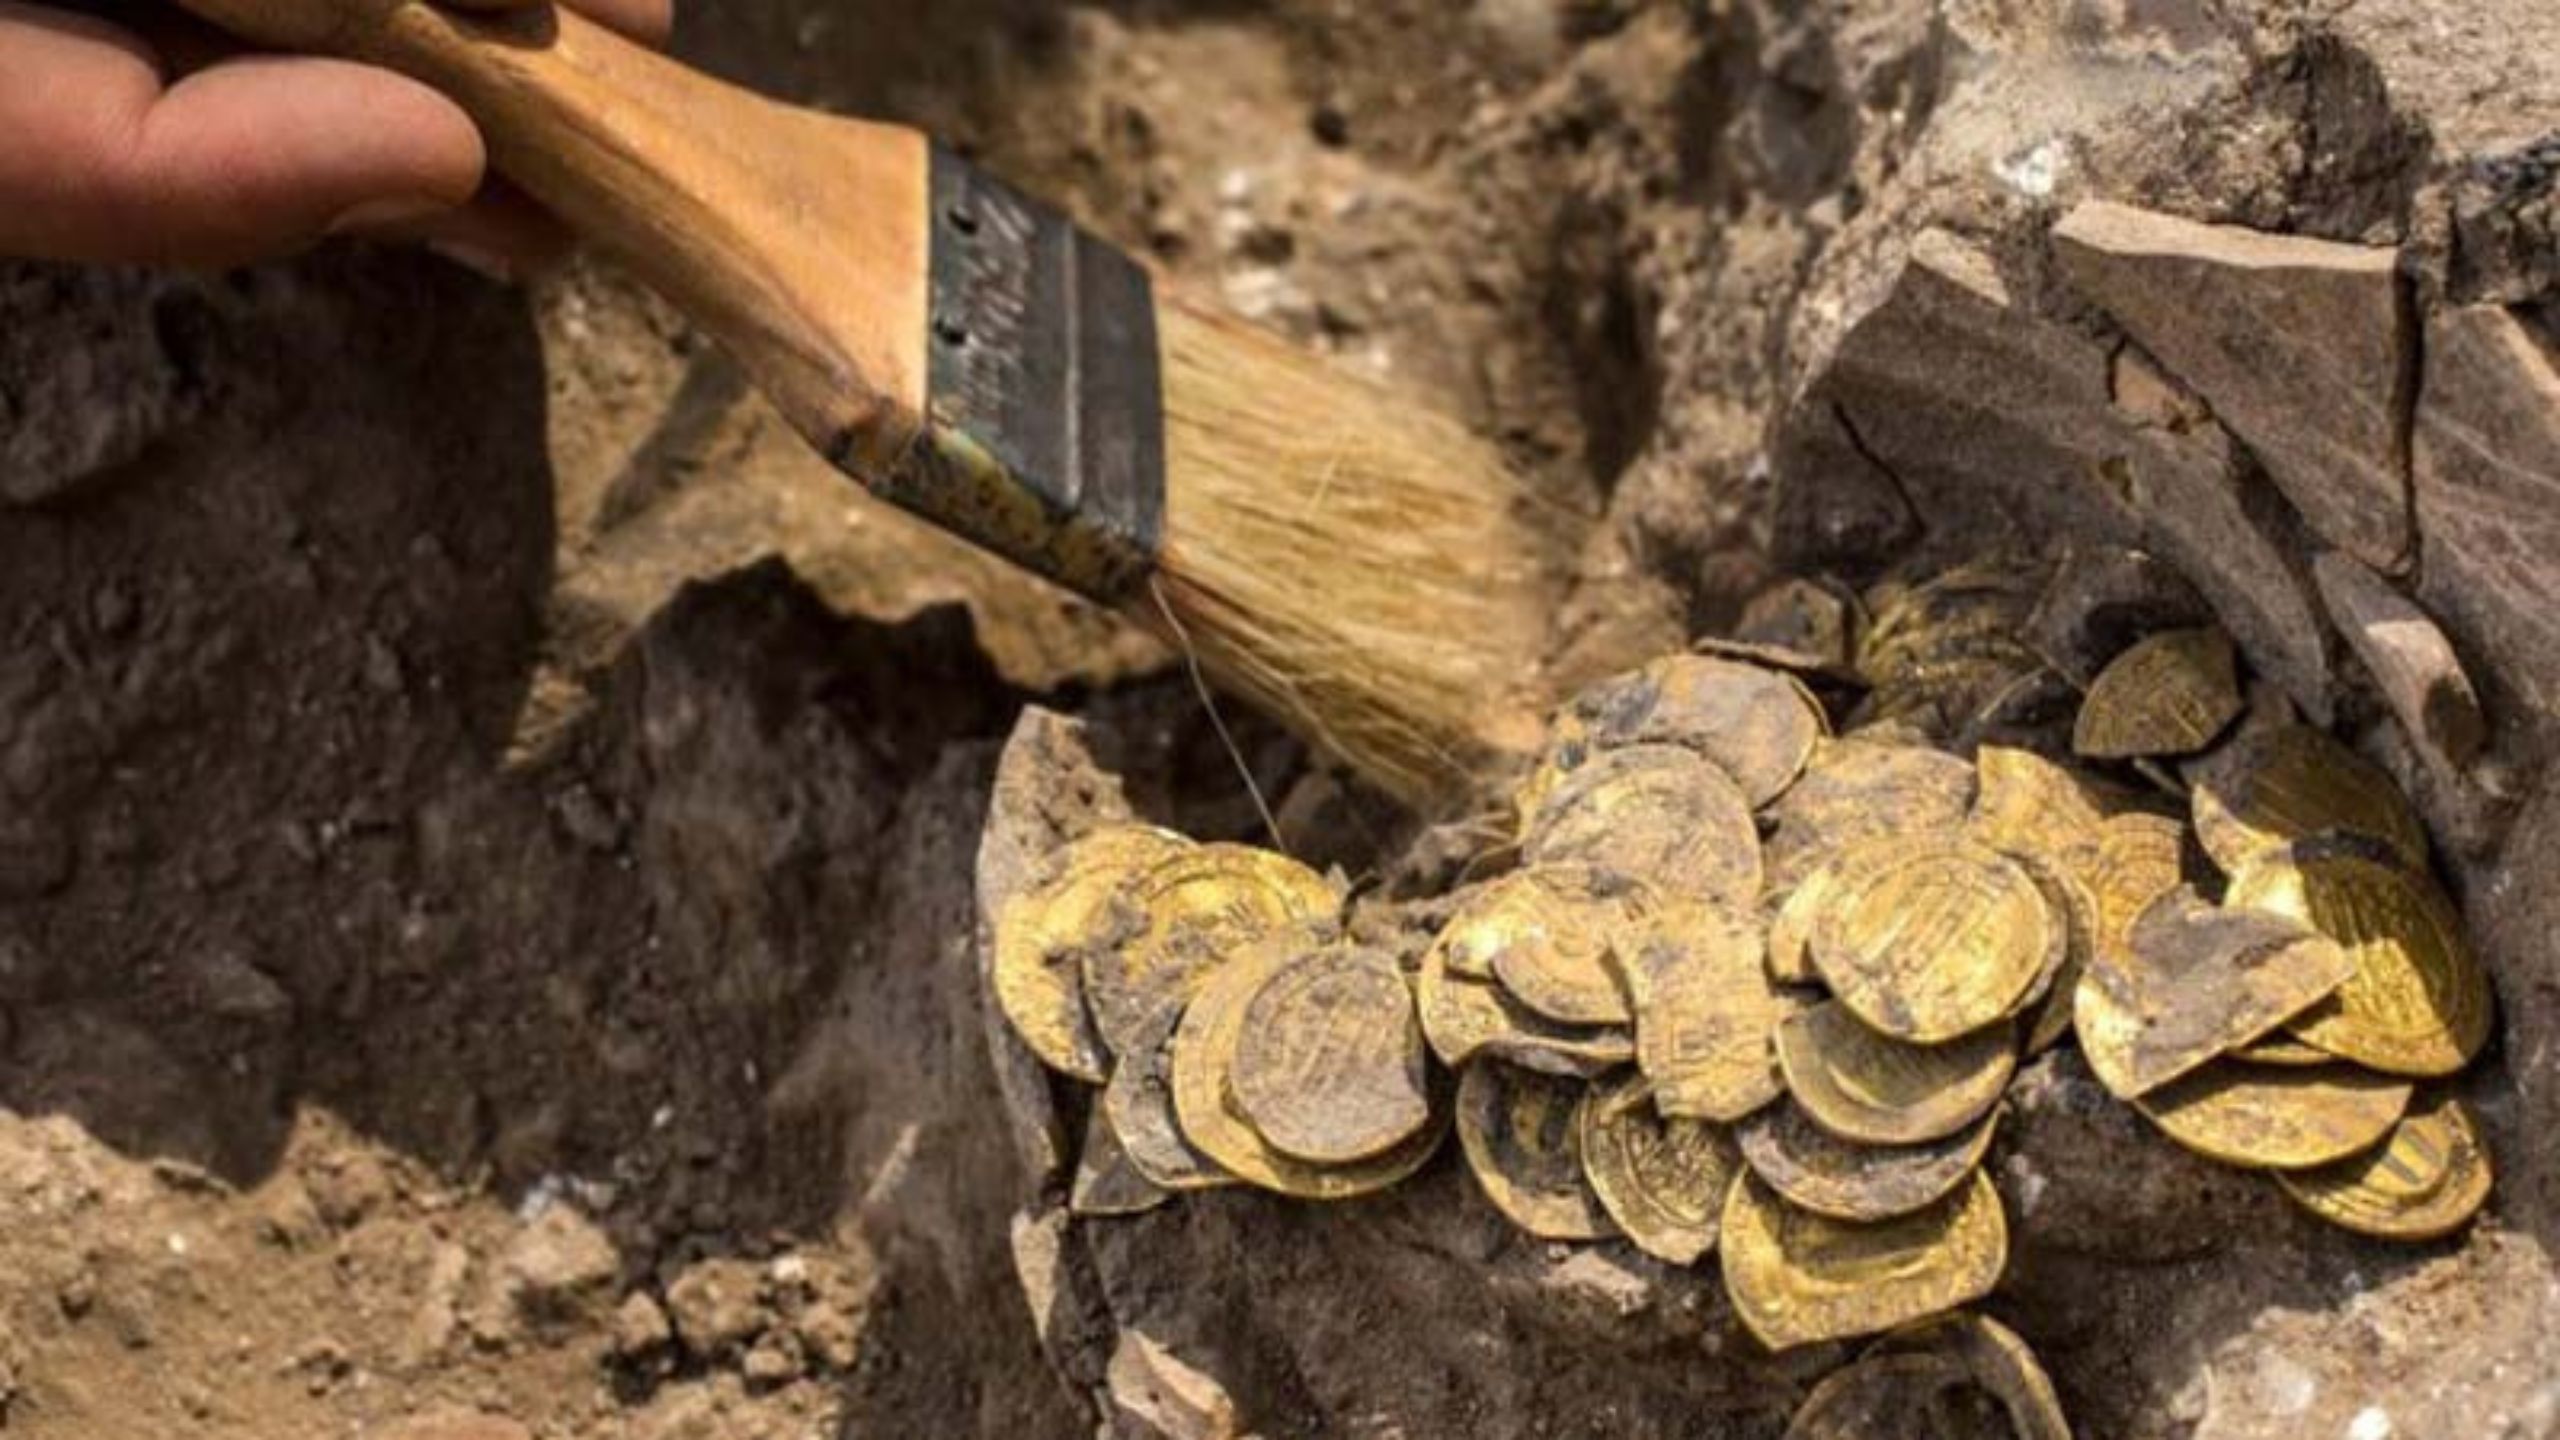 Luar Biasa, Para Peneliti Menemukan Logam Emas yang berlimpah di situs Gunung Padang, Jadi Bukti Sejarah!